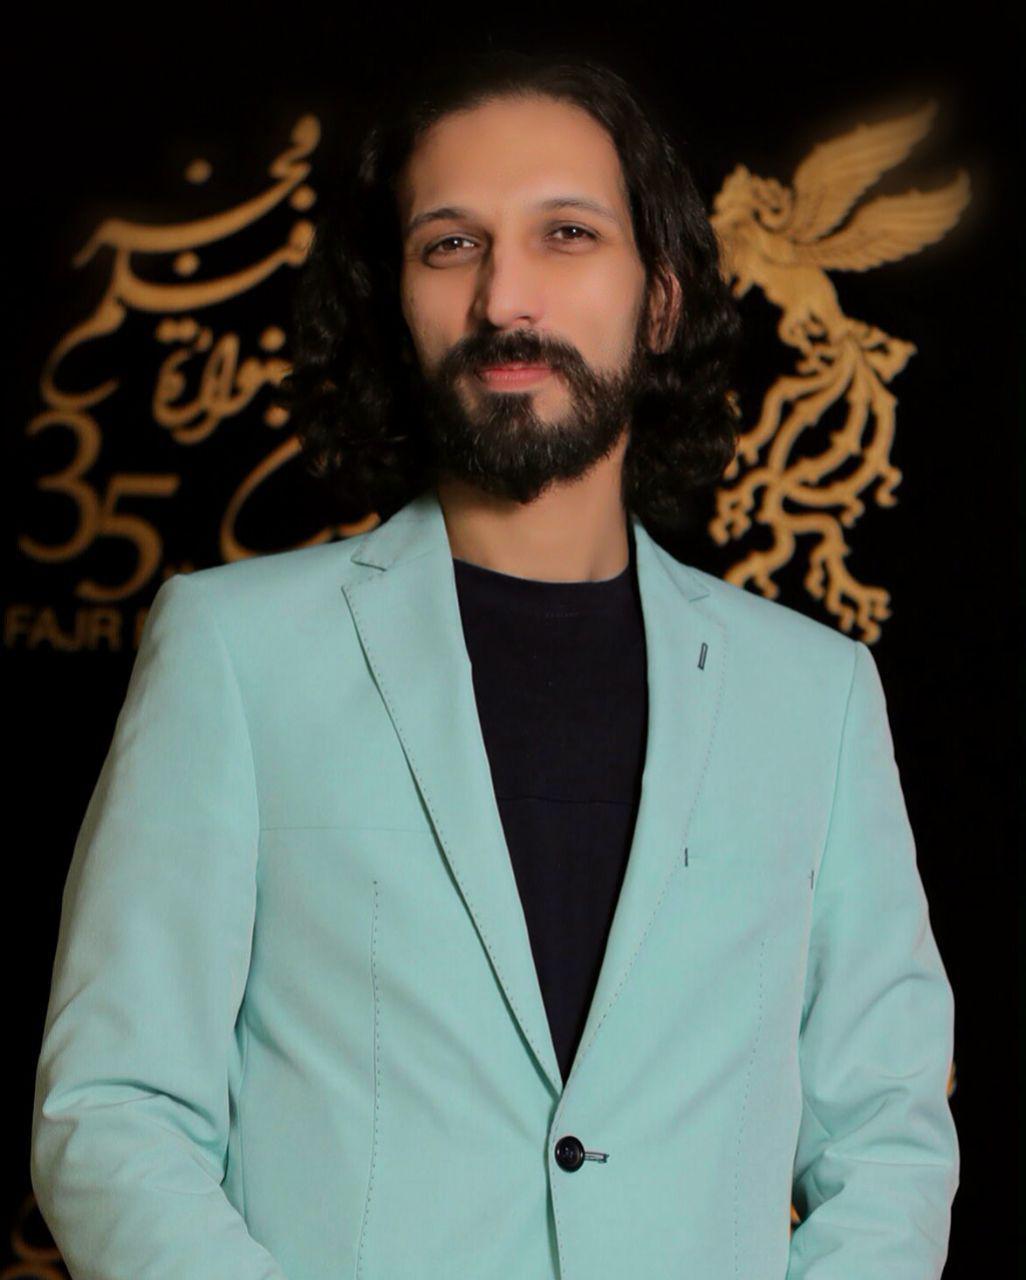 شهاب کاظمی، مجری طرح و مدیر تحقیق و توسعه (R&D) سینما و تلویزیون - عکس جشنواره